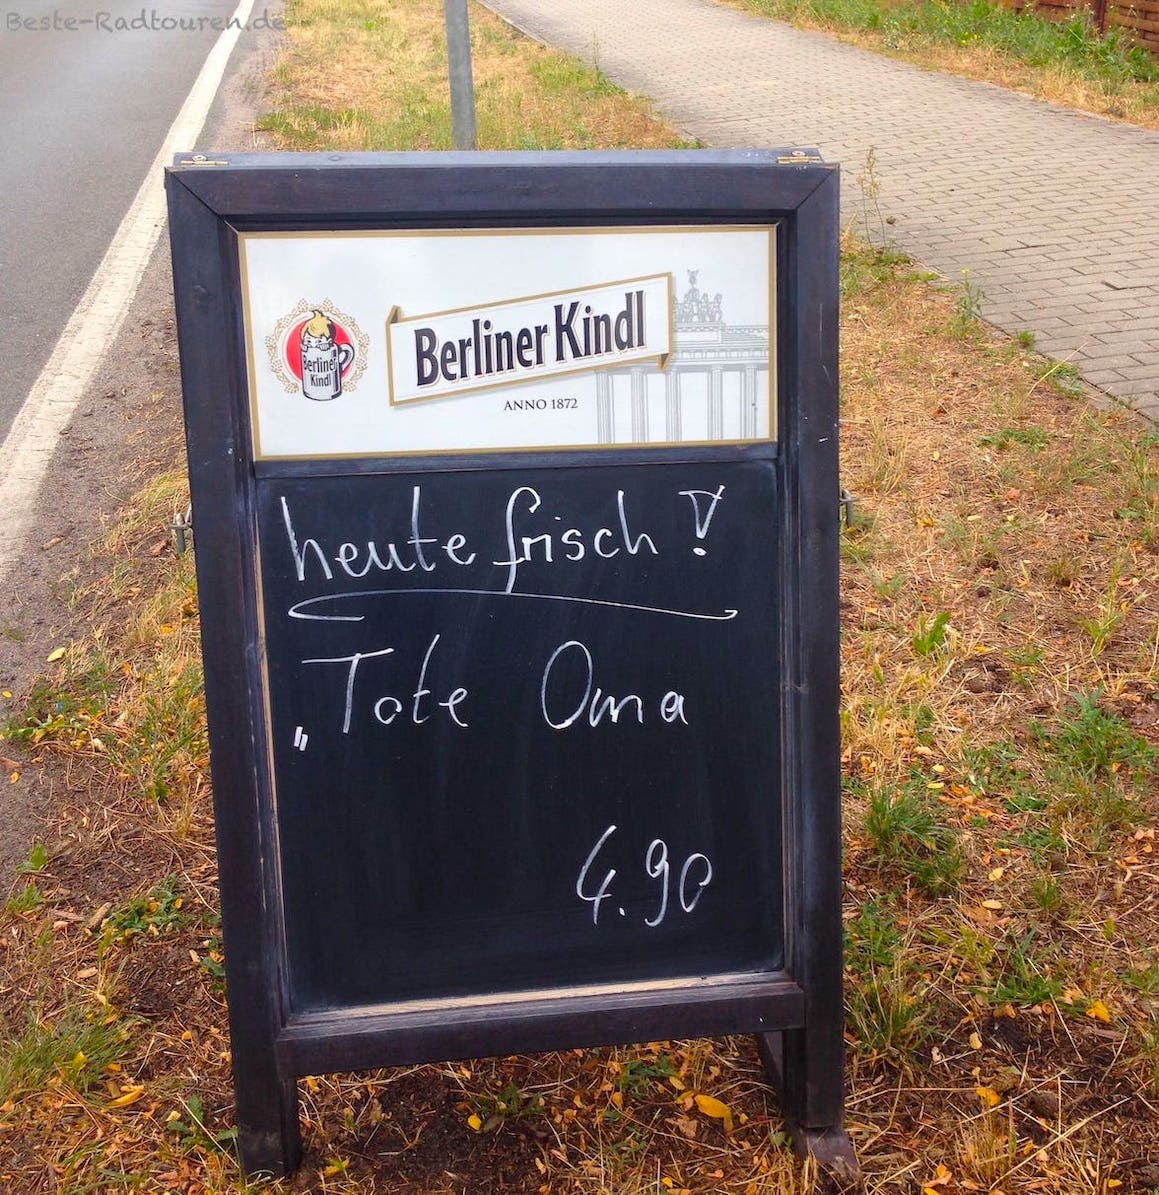 Foto vom Radweg aus: Ziegenhals bei Wernsdorf, Schild vom Biergarten-Imbiss: "Tote Oma"